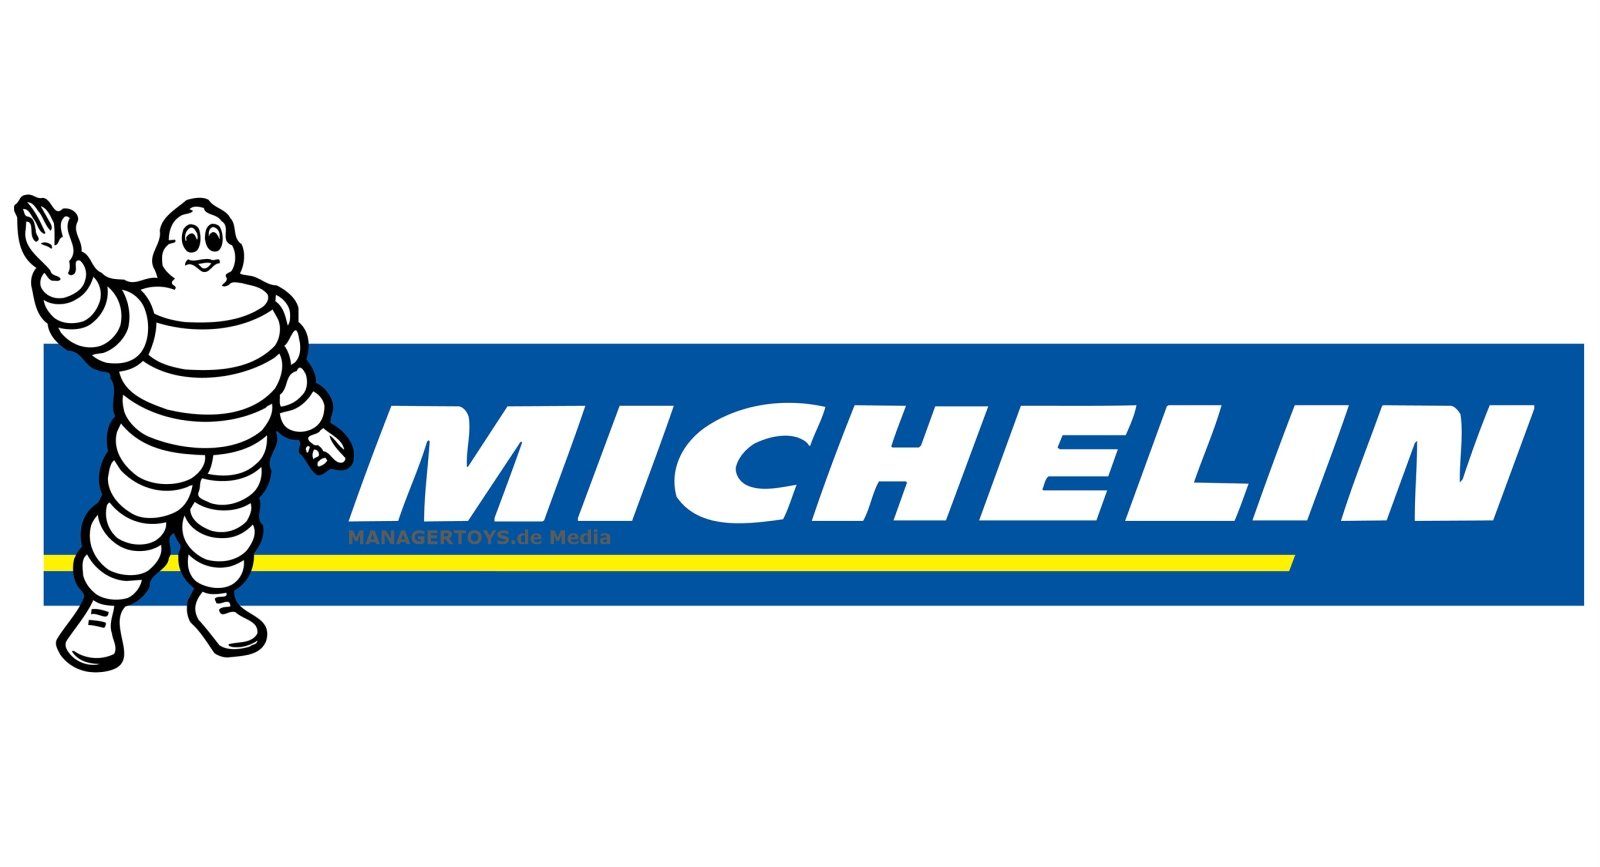 8000 Powerbank Michelin MJS80 Jump Ladegerät Auto mAh Starter Starthilfegerät Akku